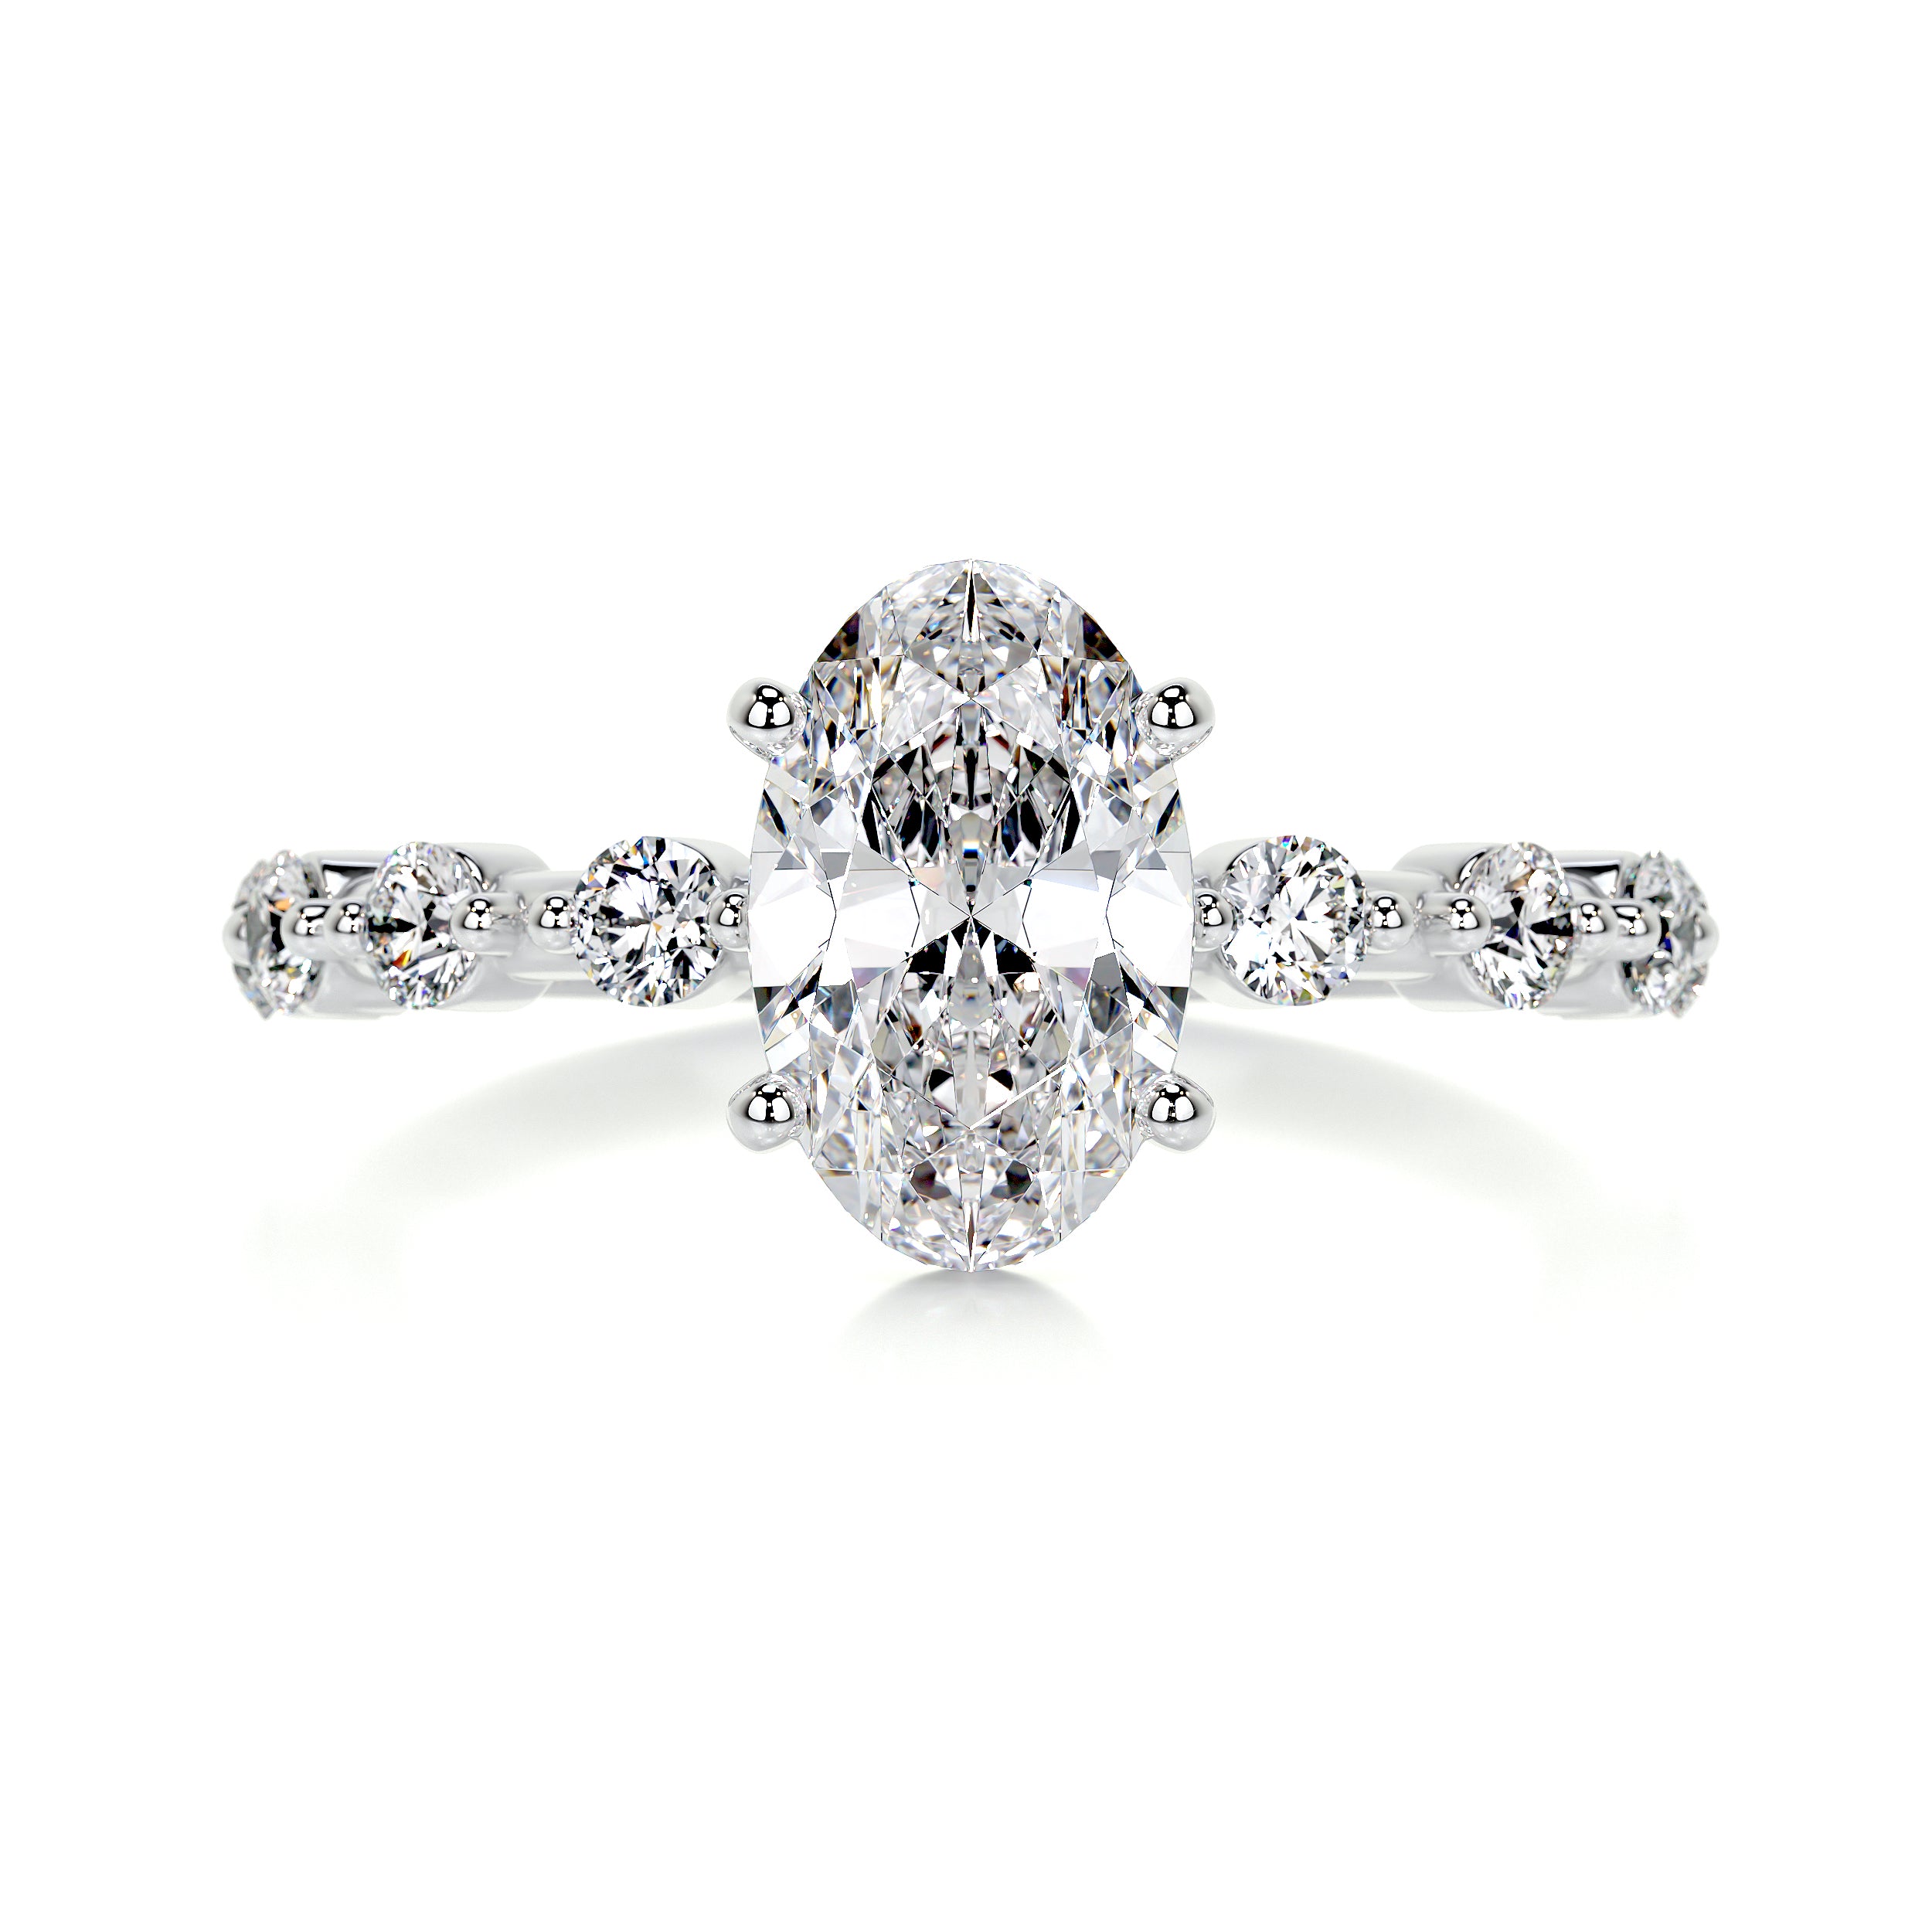 Bell Diamond Engagement Ring -18K White Gold